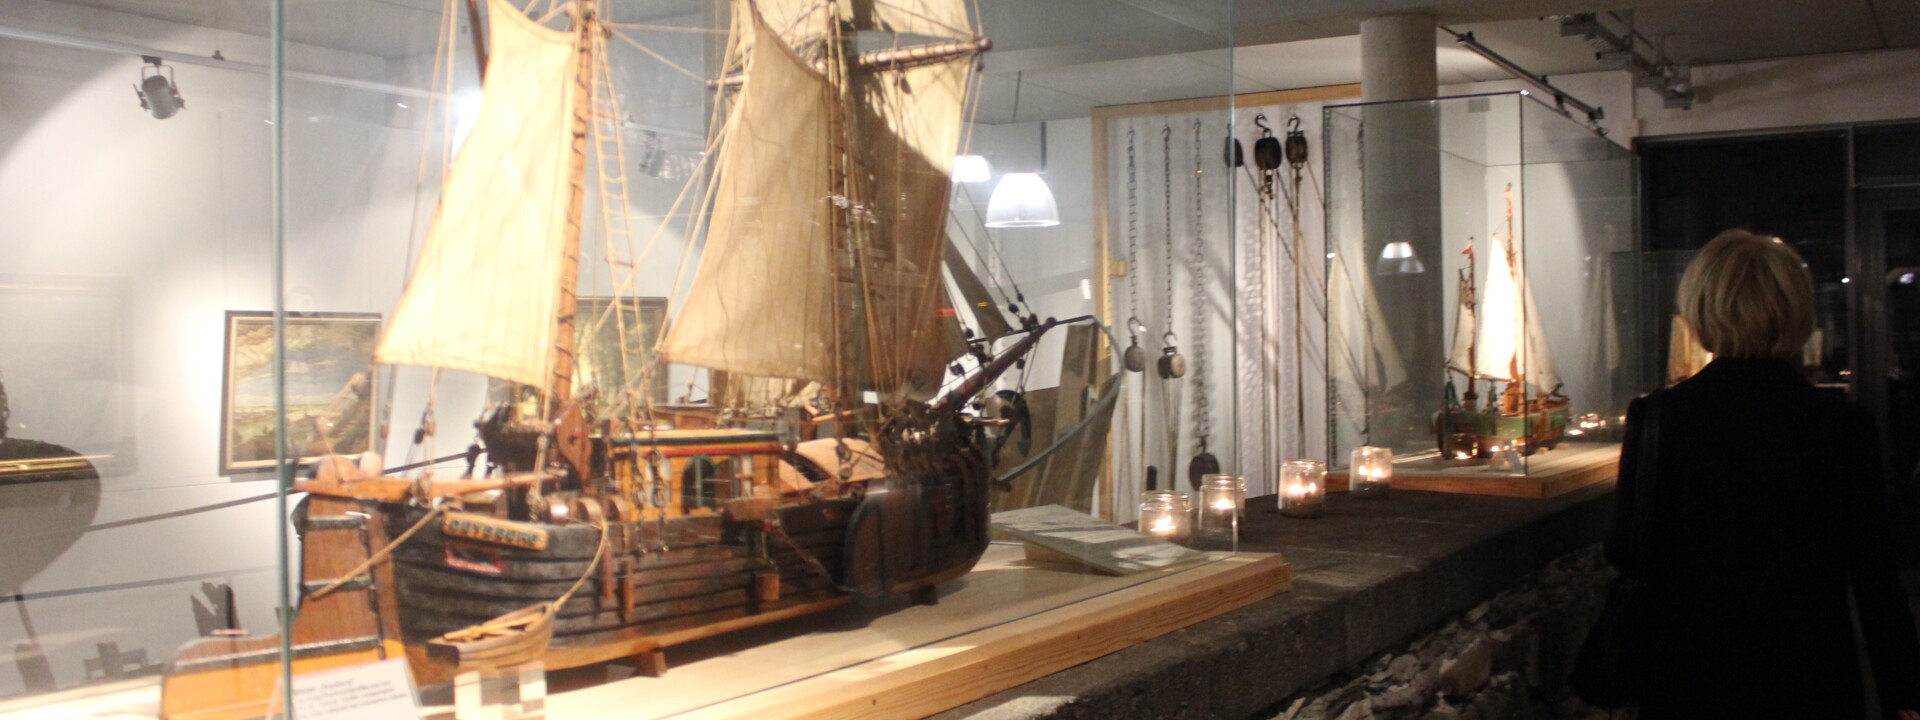 Ausstellung vom mittelalterlichen Schiff im Rhein-Museum ©Koblenz-Touristik GmbH